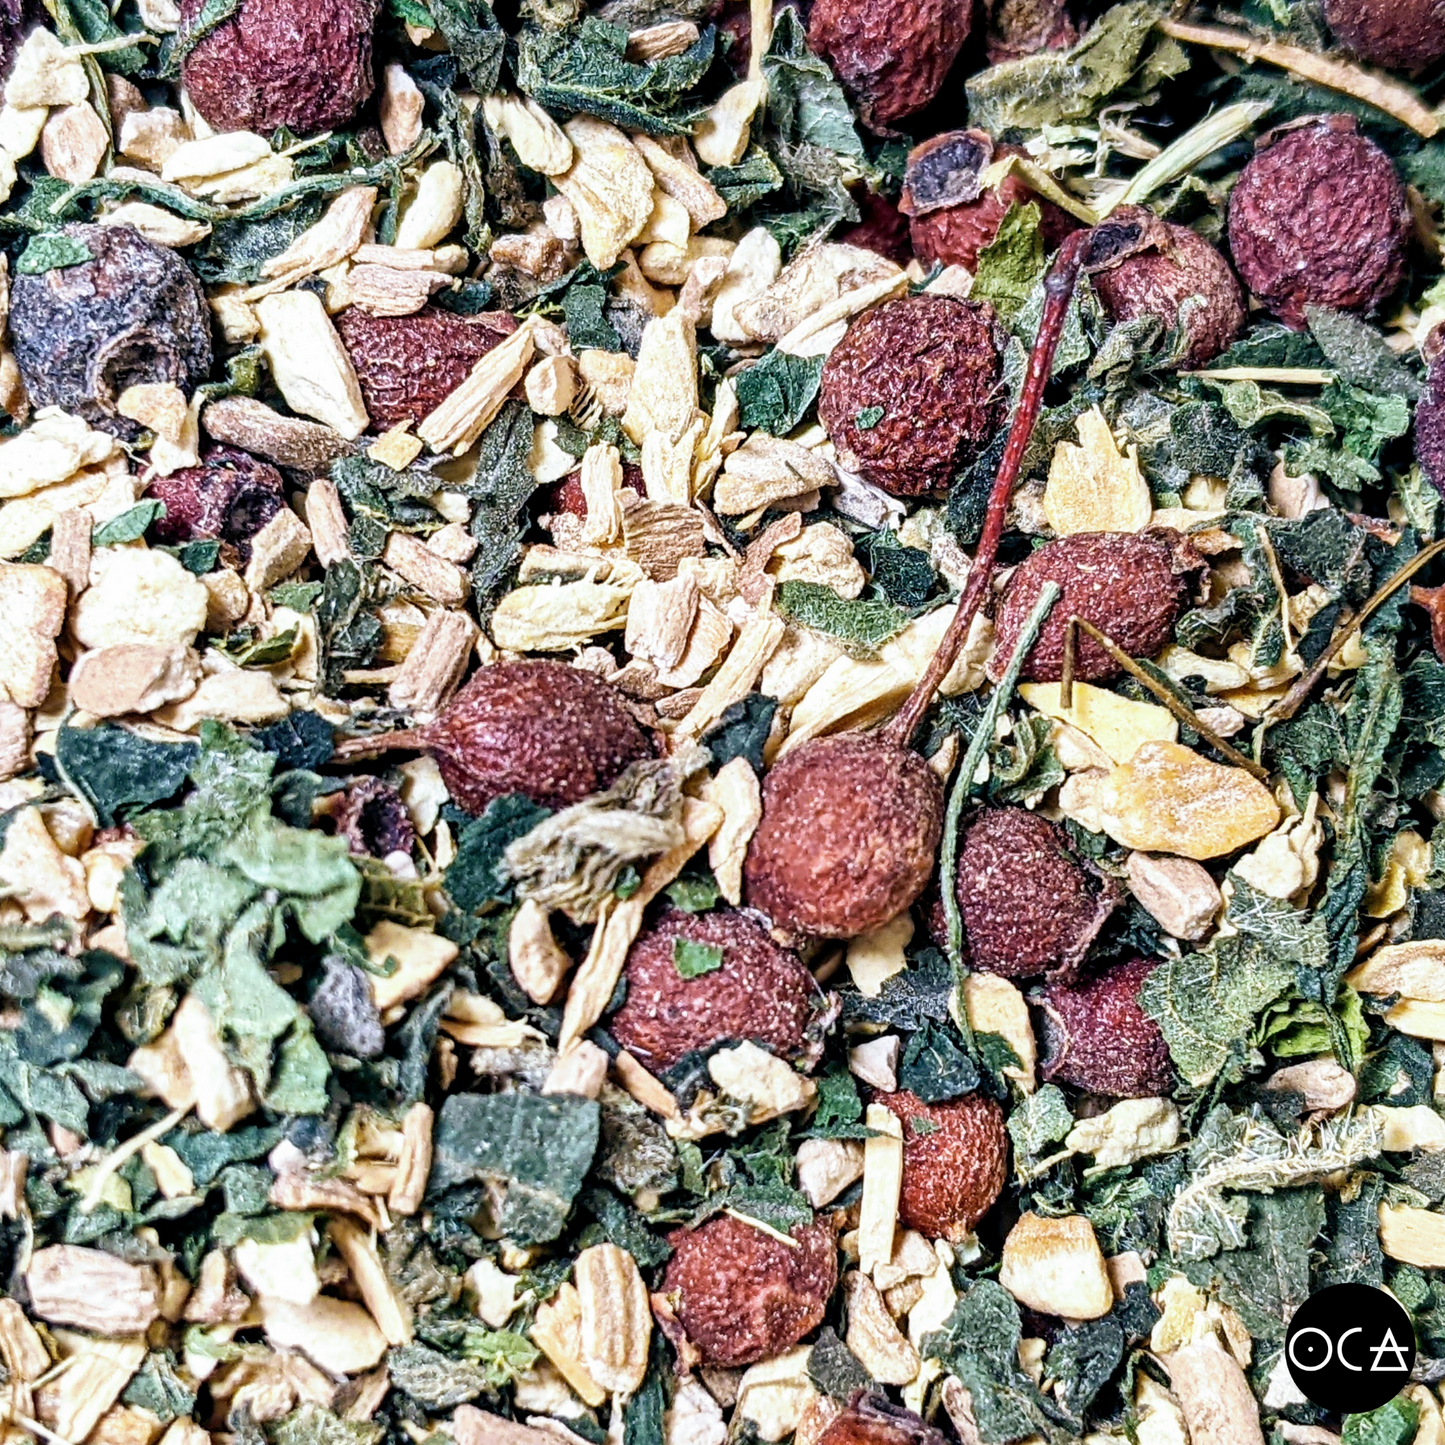 Aries Herbal Tea (Herbtention)